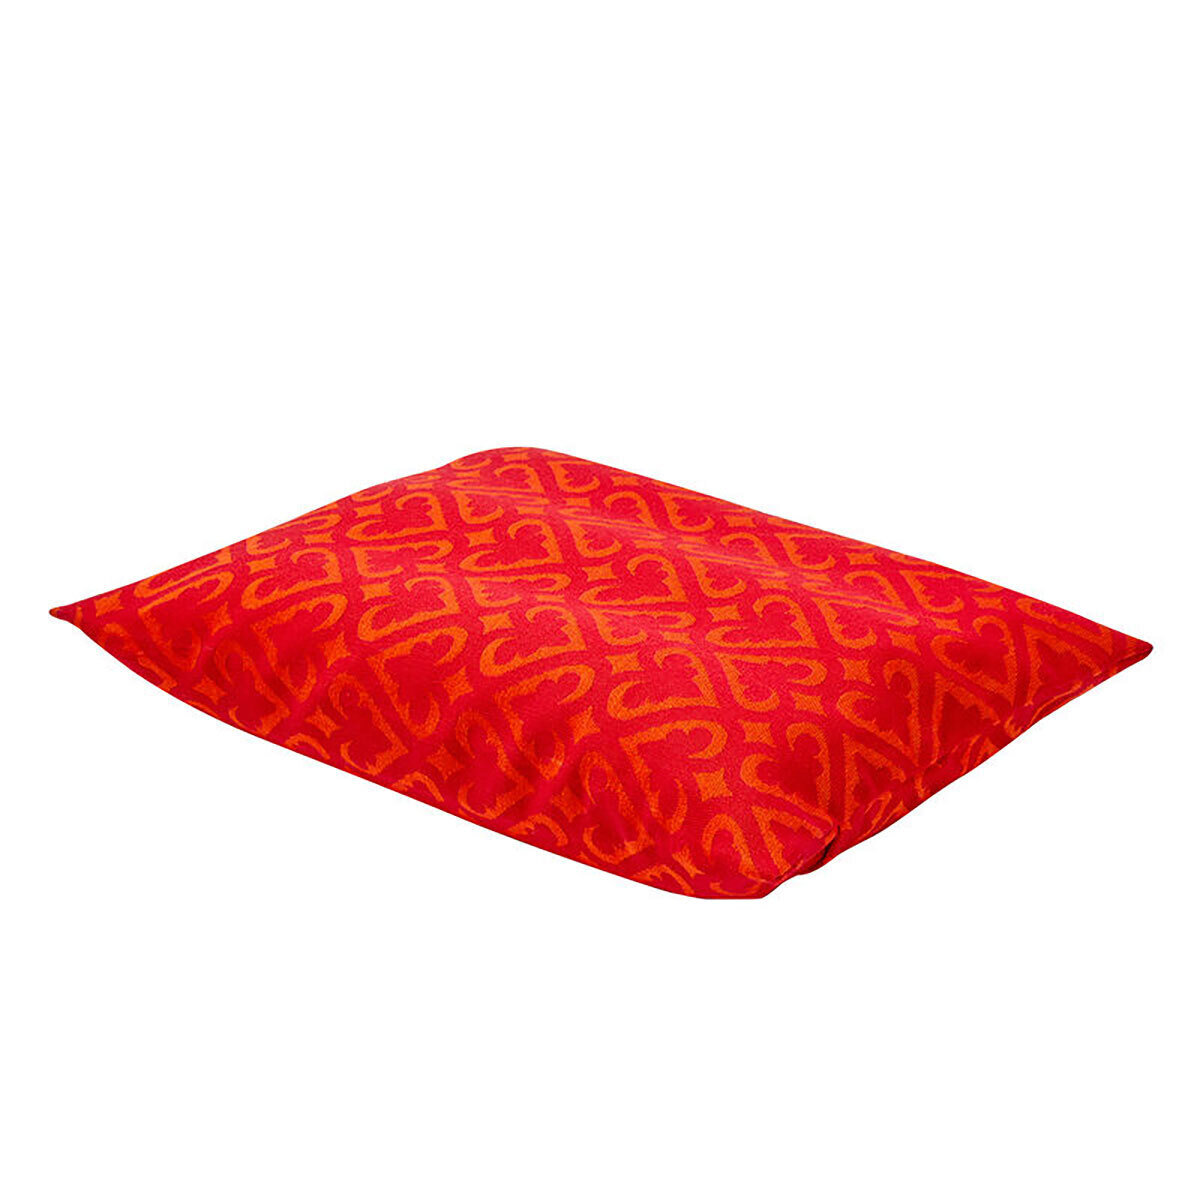 Le Jacquard Francais Monoi Red Beach Cushion 13 x 10 Inch 28791